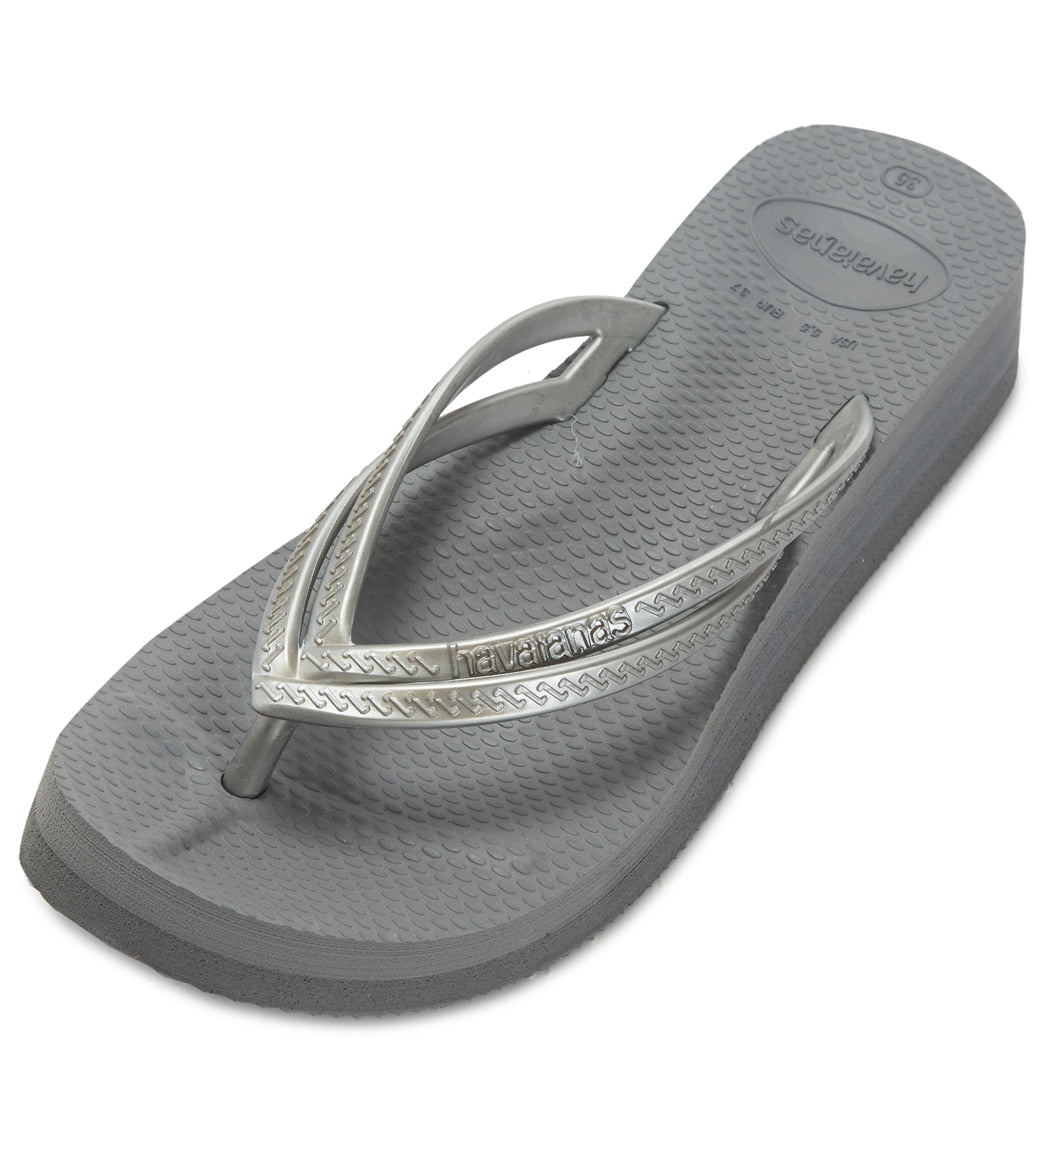 Havaianas Womens Wedge Sandals - Steel Grey 37 - Swimoutlet.com